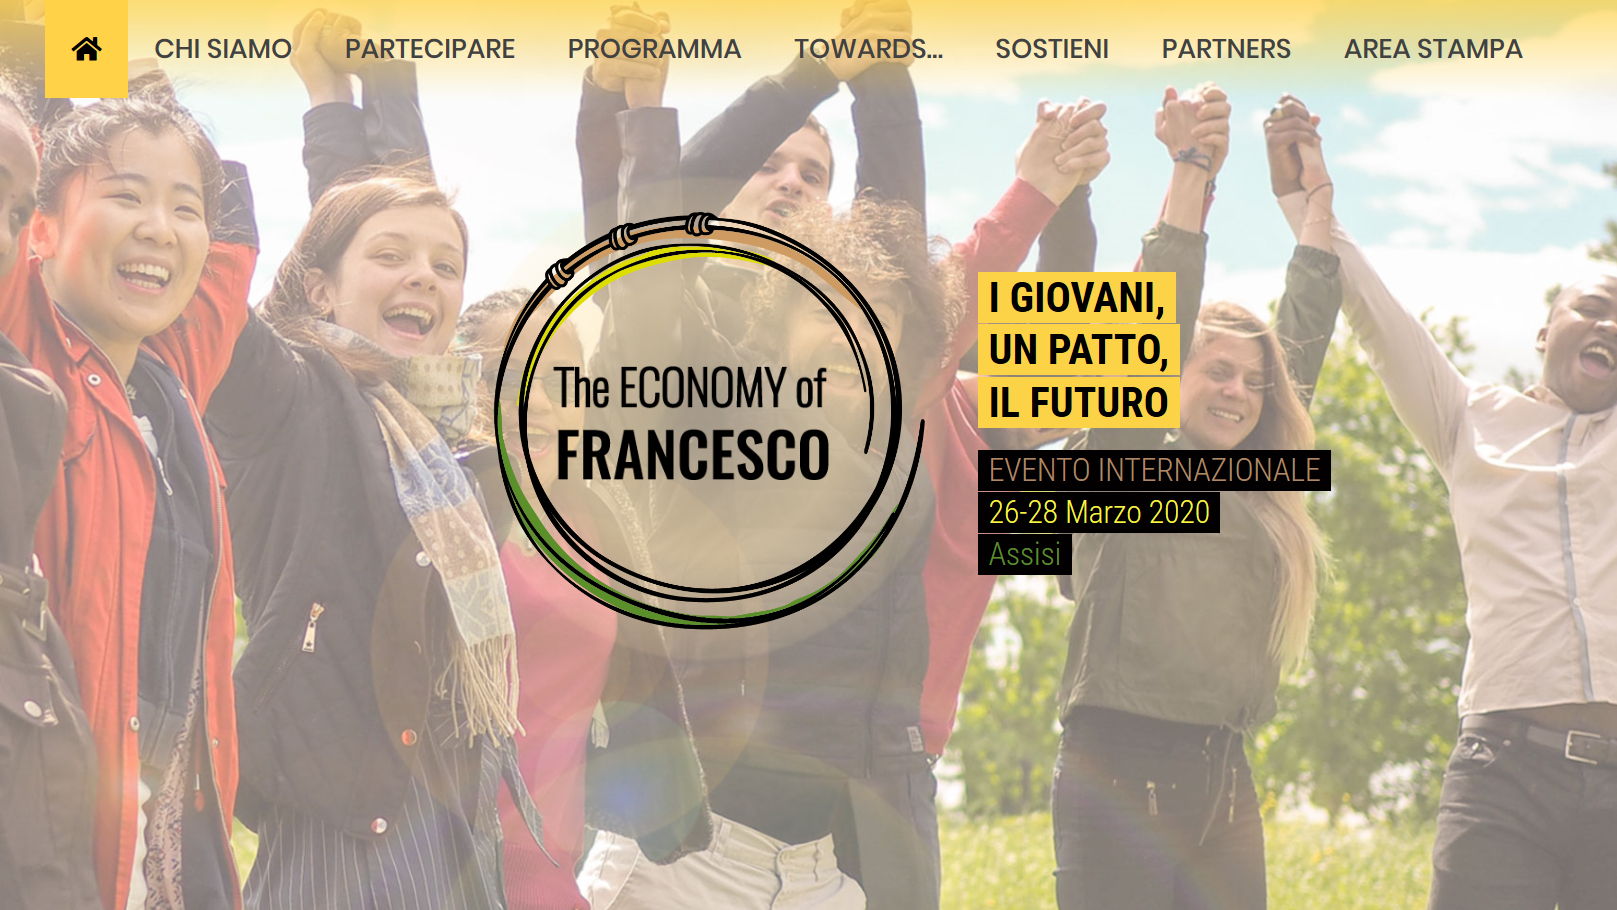 L'home page del sito dell'evento per i giovani che si svolgerà ad Assisi a novembre.